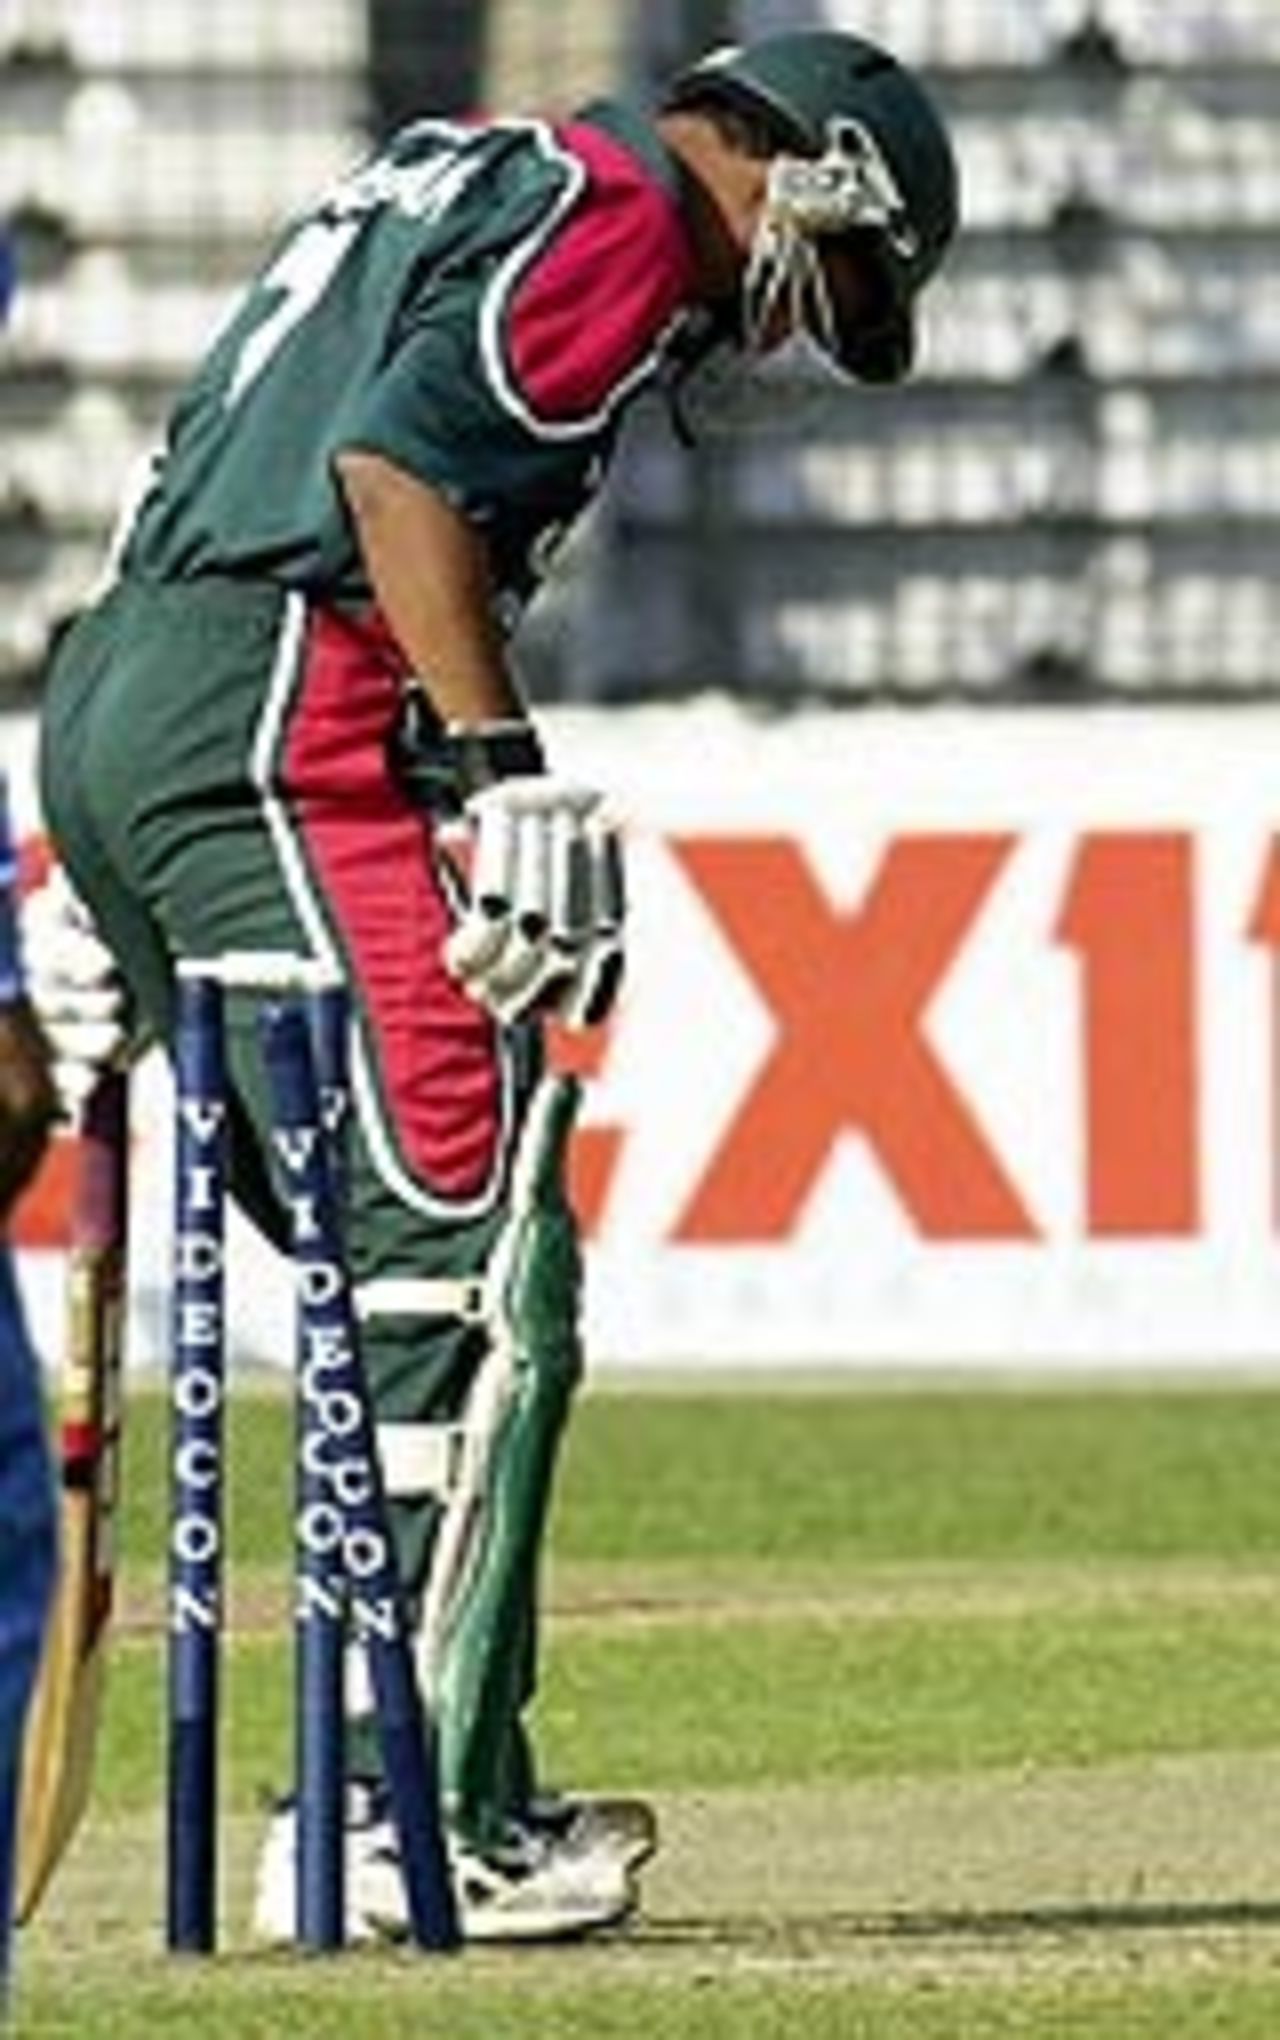 Habibul Bashar bowled by Ajit Agarkar, Bangladesh v India, 2nd ODI, Dhaka, December 26, 2004